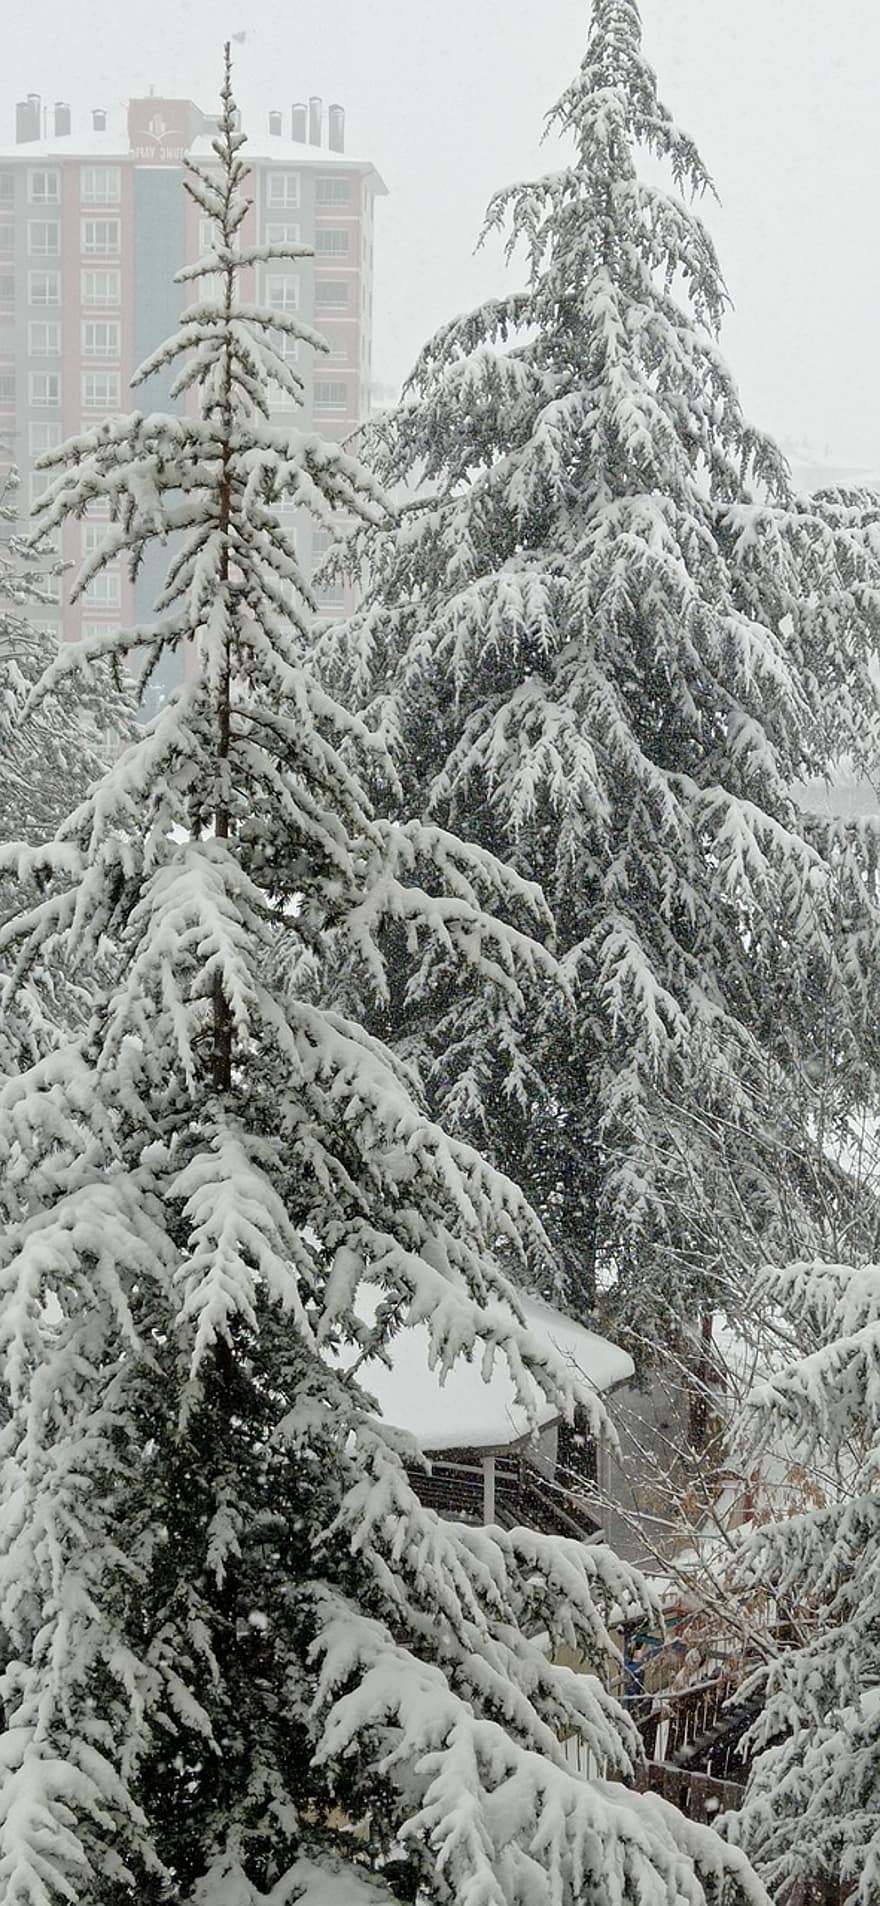 δέντρο, χιόνι, χειμώνας, δάσος, πεύκο, παγωνιά, εποχή, κωνοφόρο δέντρο, χιονίζει, ψυχρή θερμοκρασία, καιρός